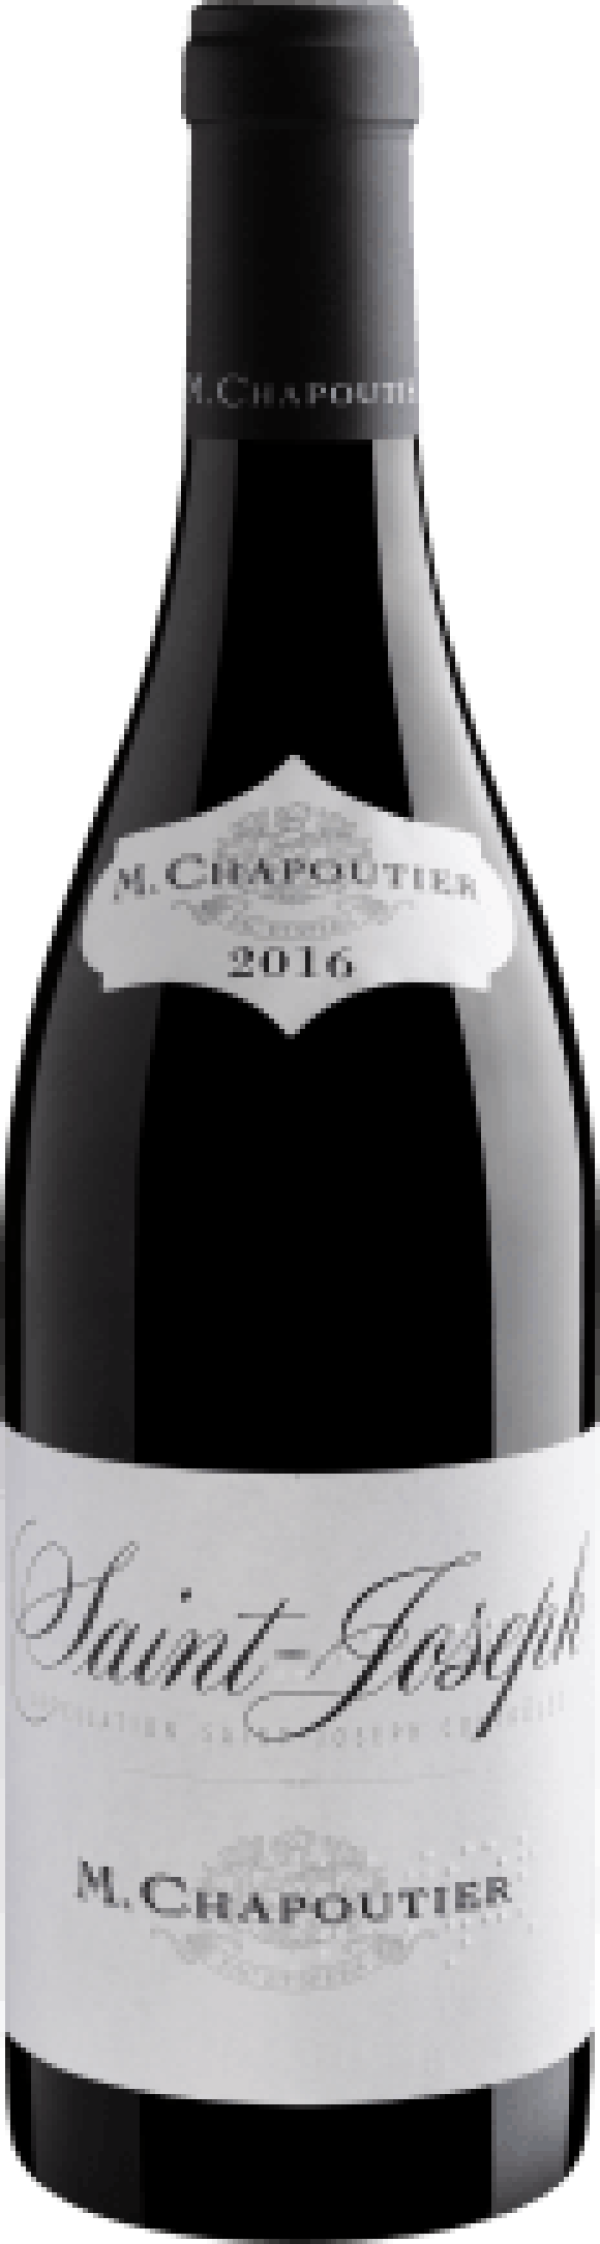 M. Chapoutier Saint-Joseph AOC 2016